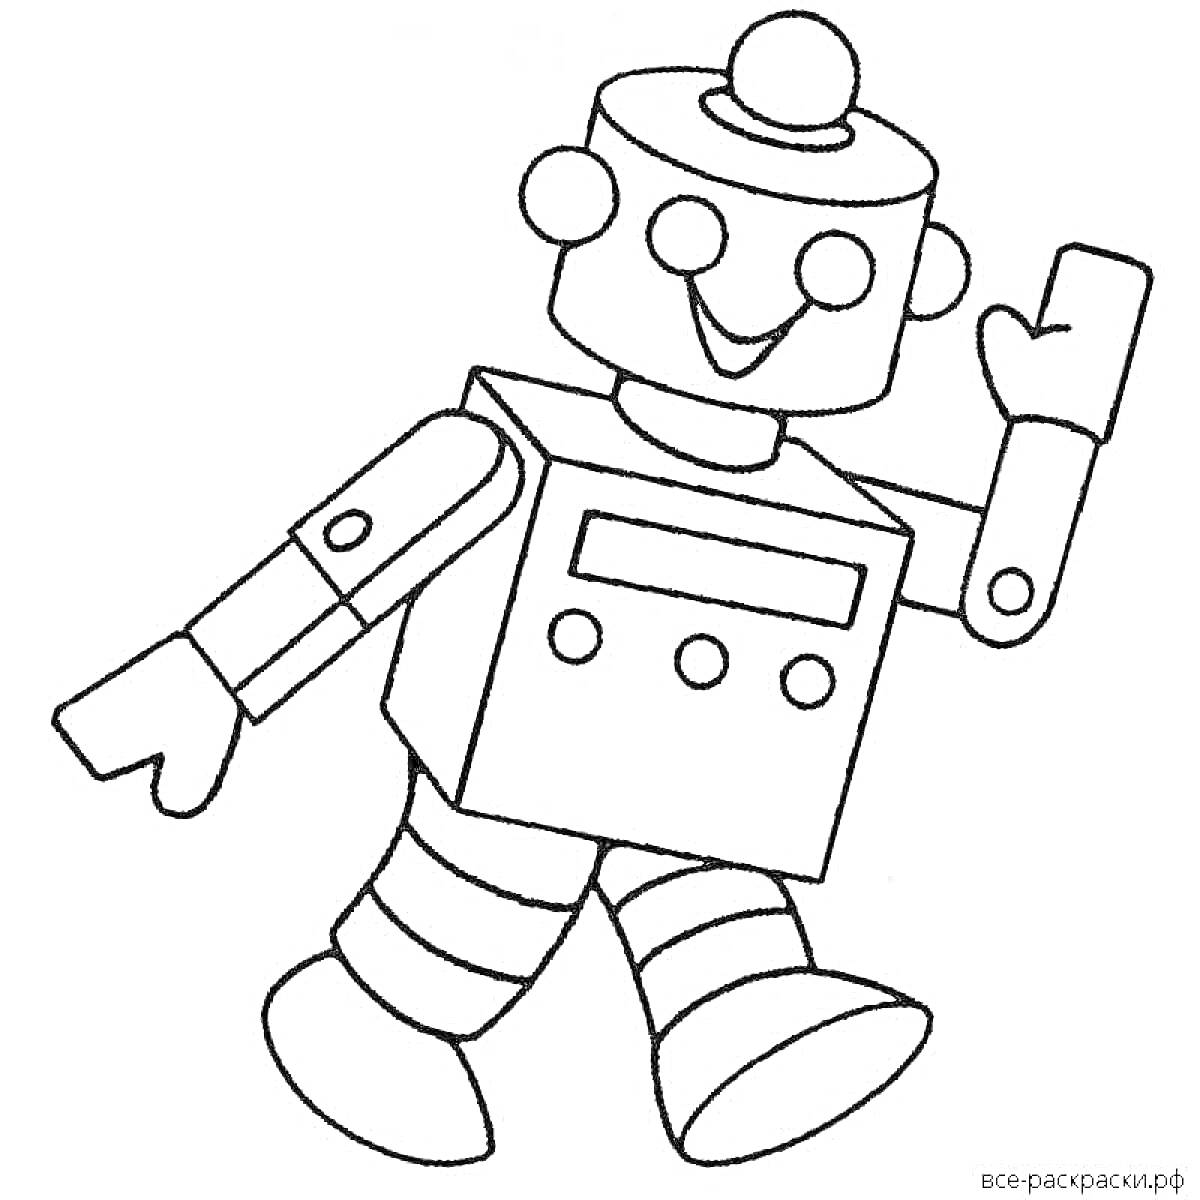 Раскраска Робот с круглыми глазами, ротиком, антеннкой на голове, двумя руками, двумя ногами и кнопками на корпусе